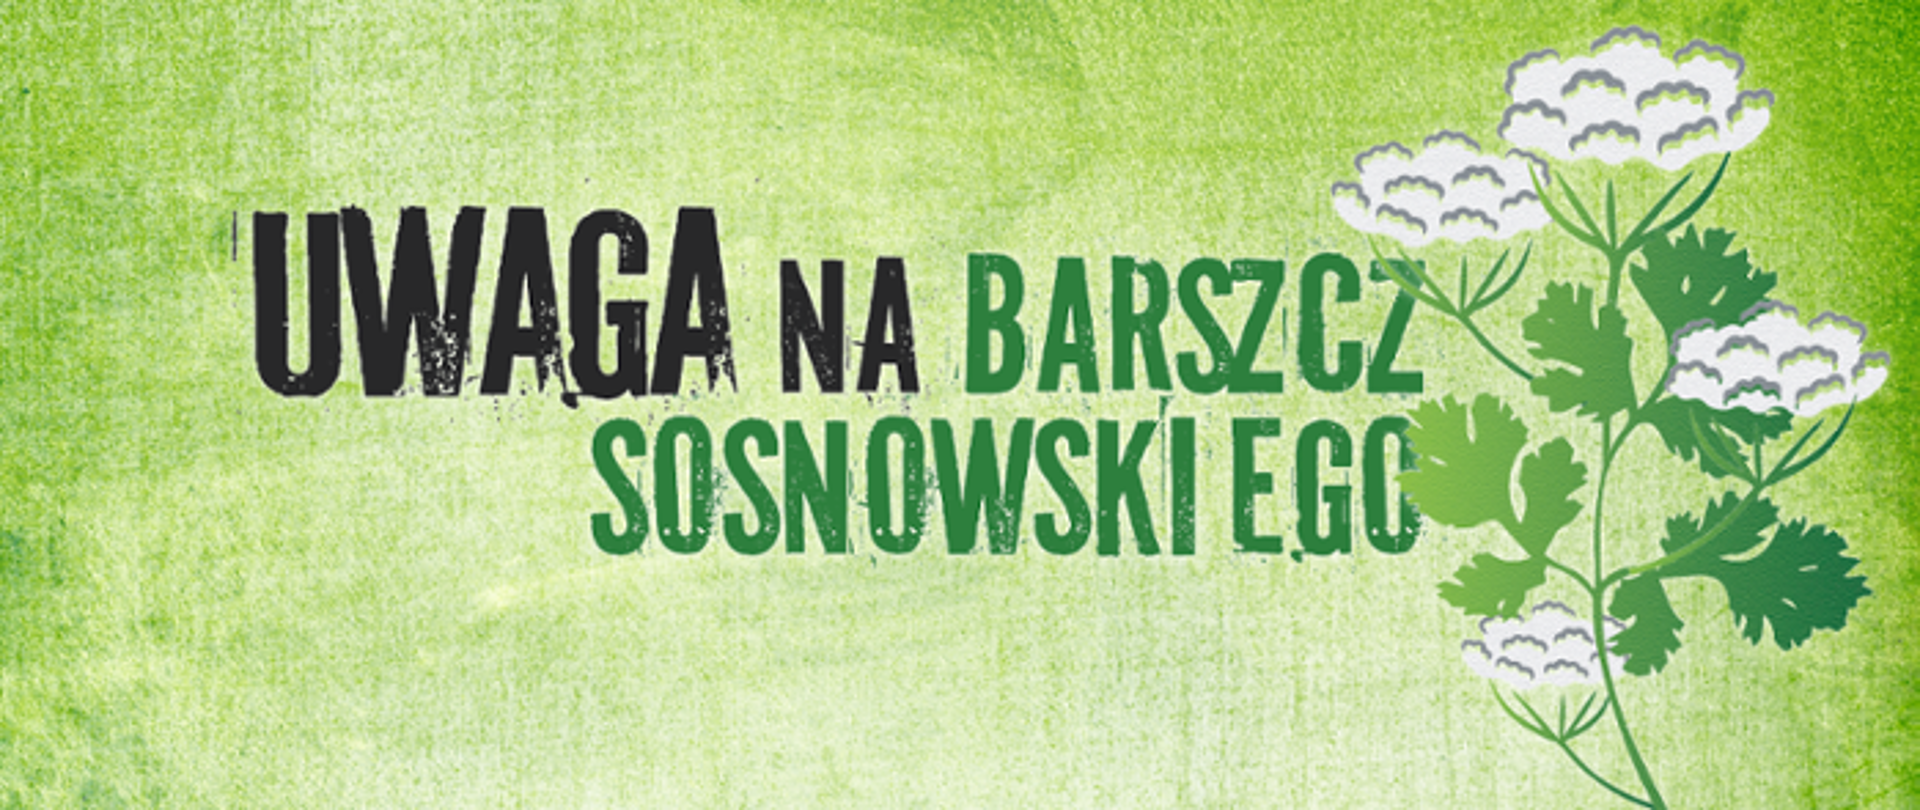 Uwaga_na_barszcz_Sosnowskiego